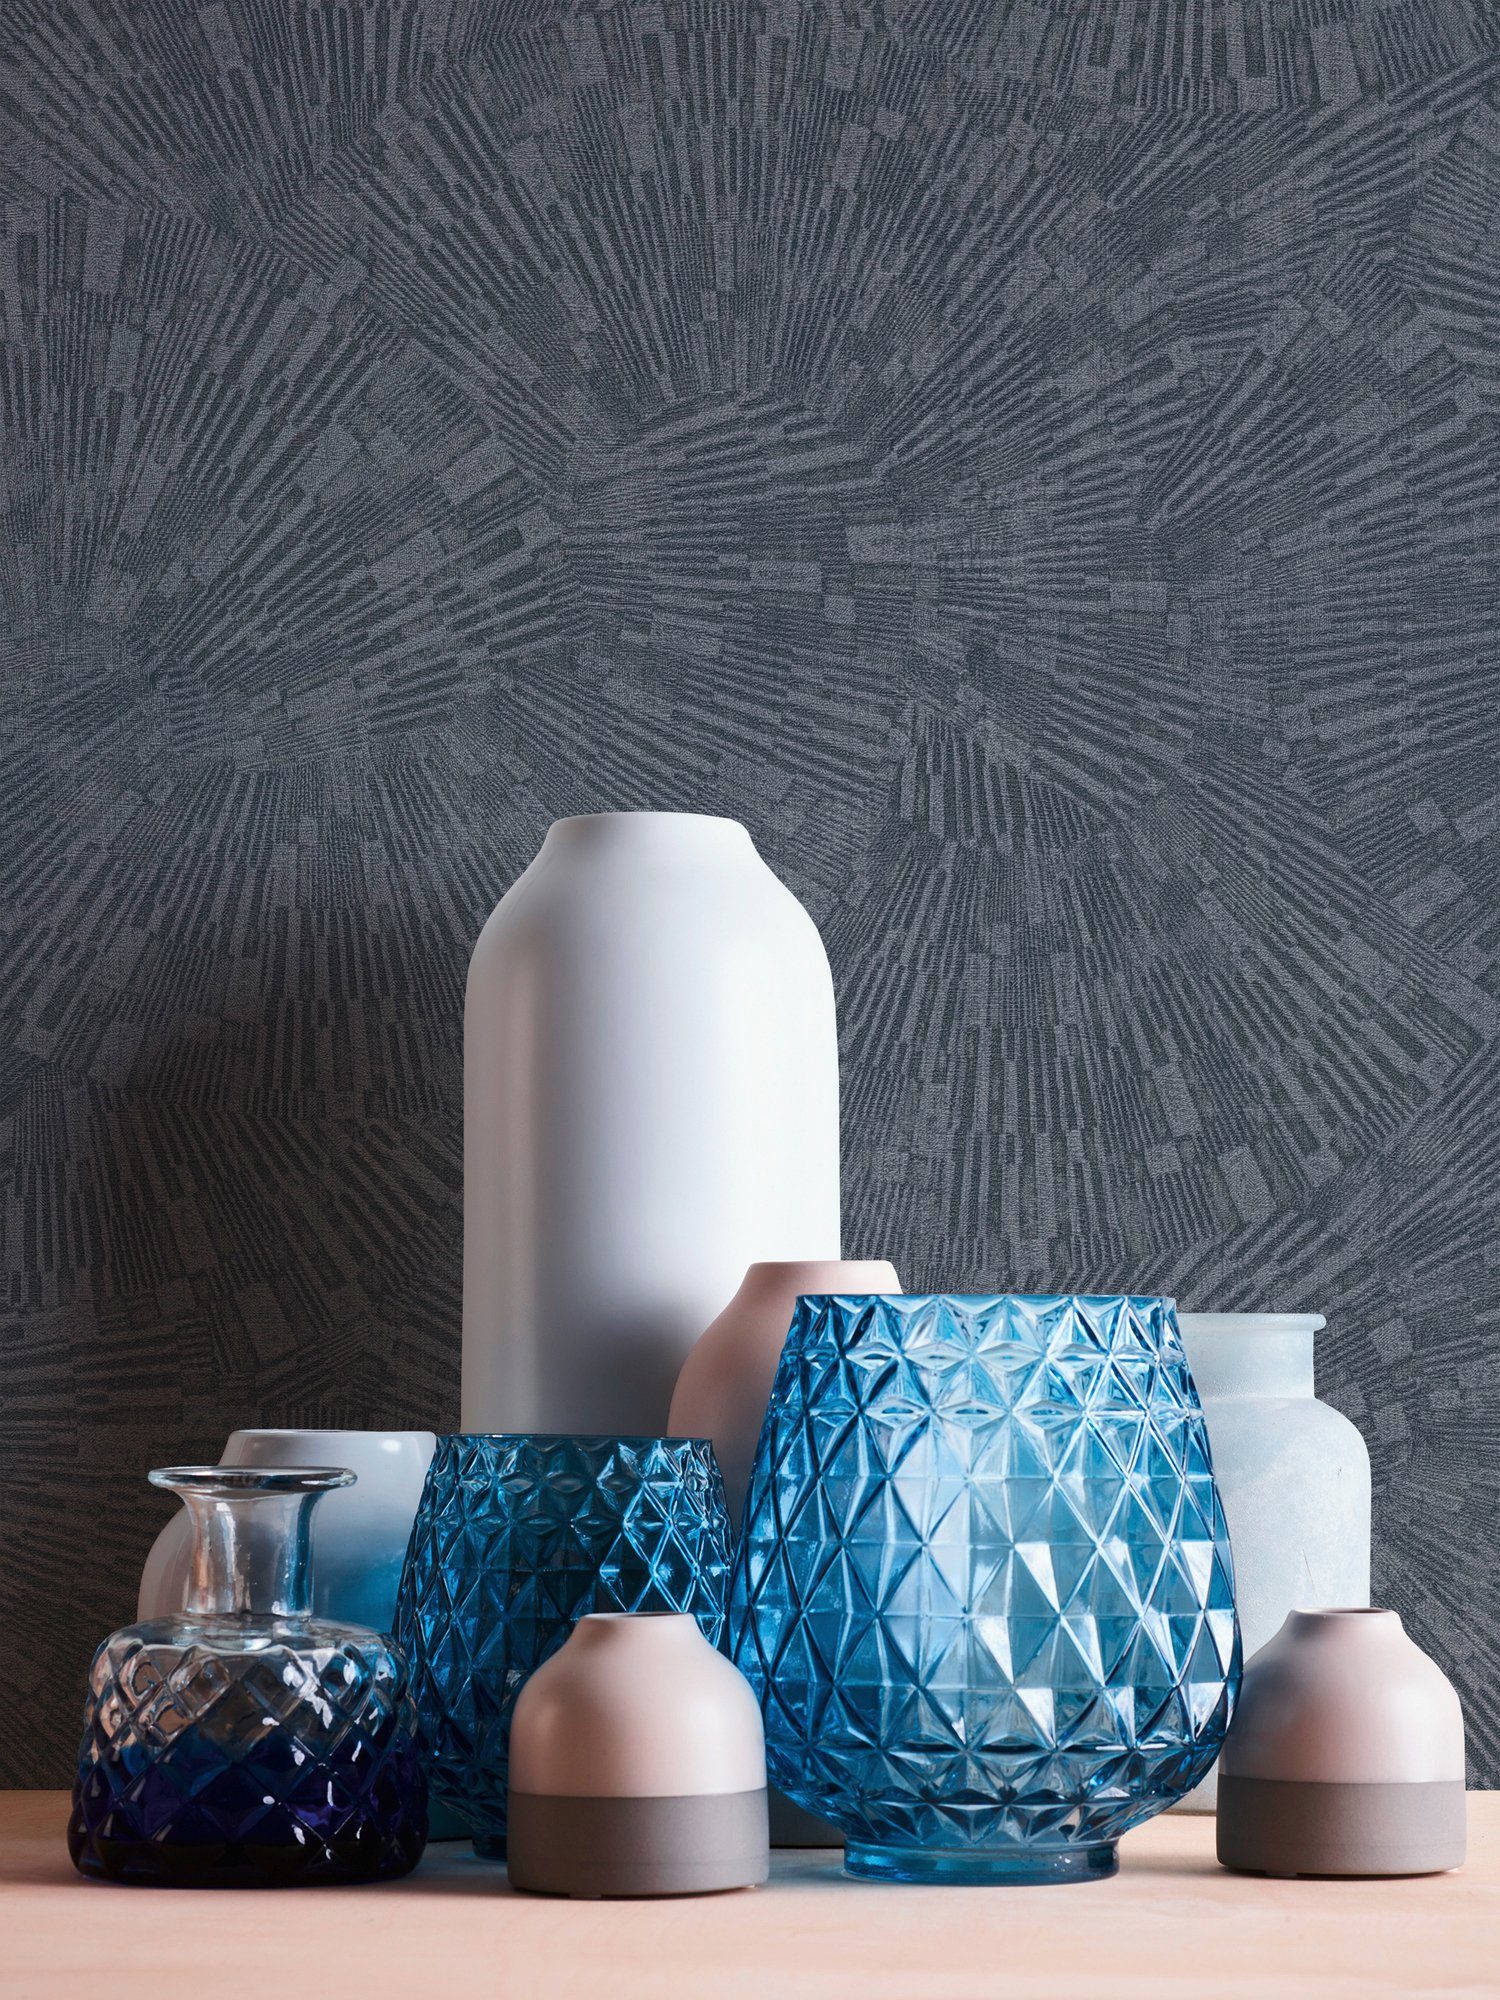 Vliestapete Tapete A.S. Effekt 3D walls gemustert, living blau Titanium, Moderne Création strukturiert,